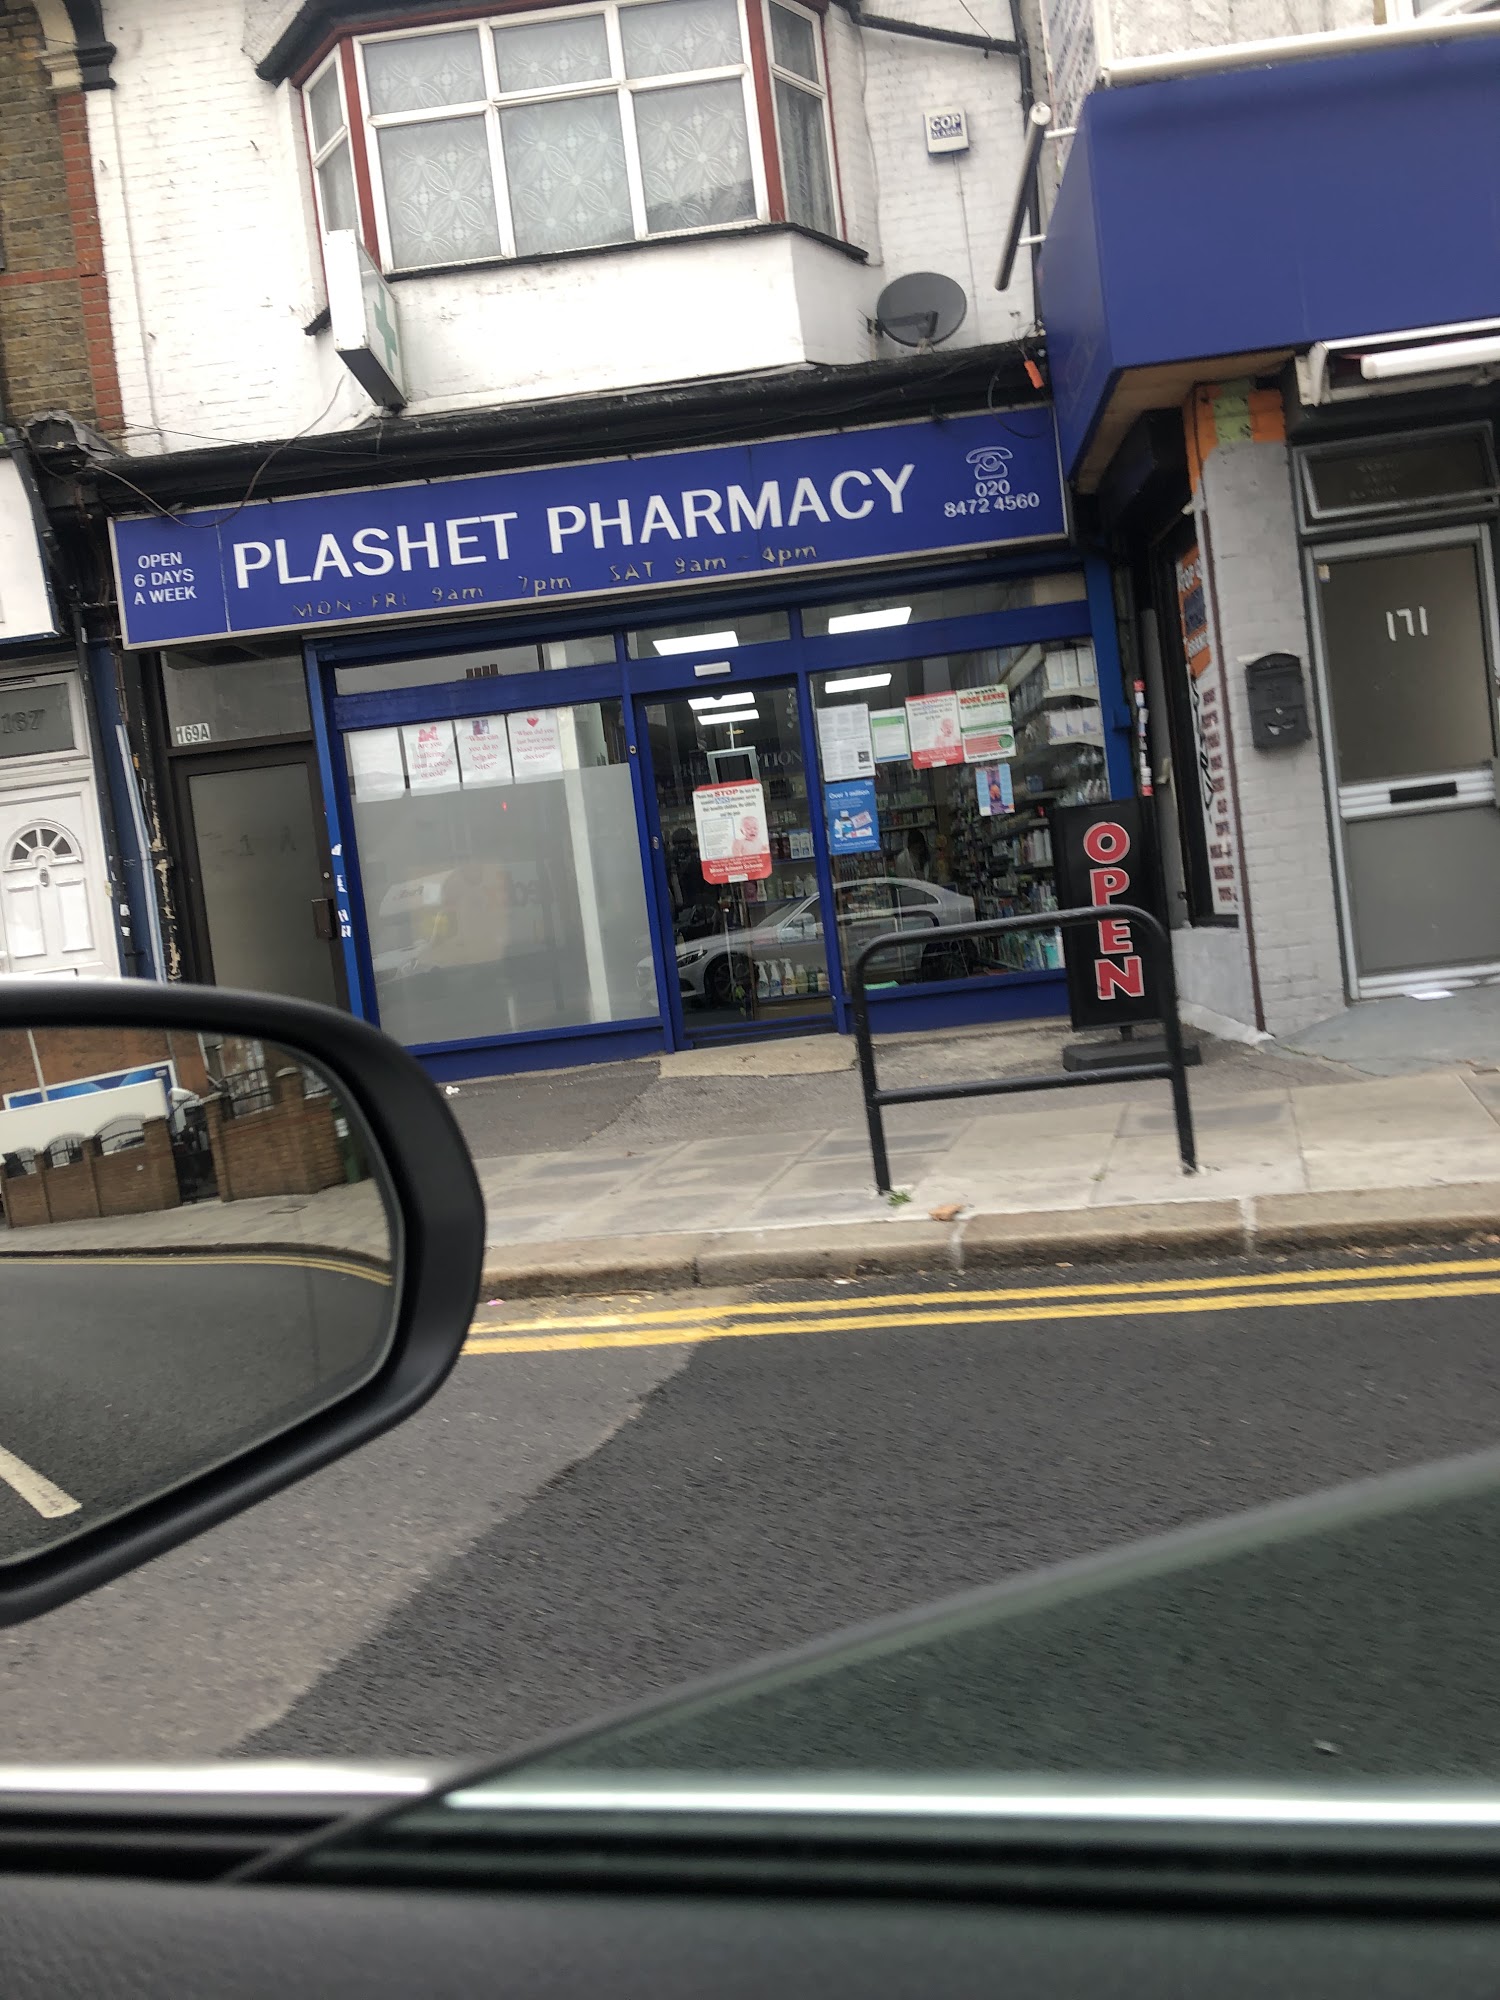 Plashet Pharmacy